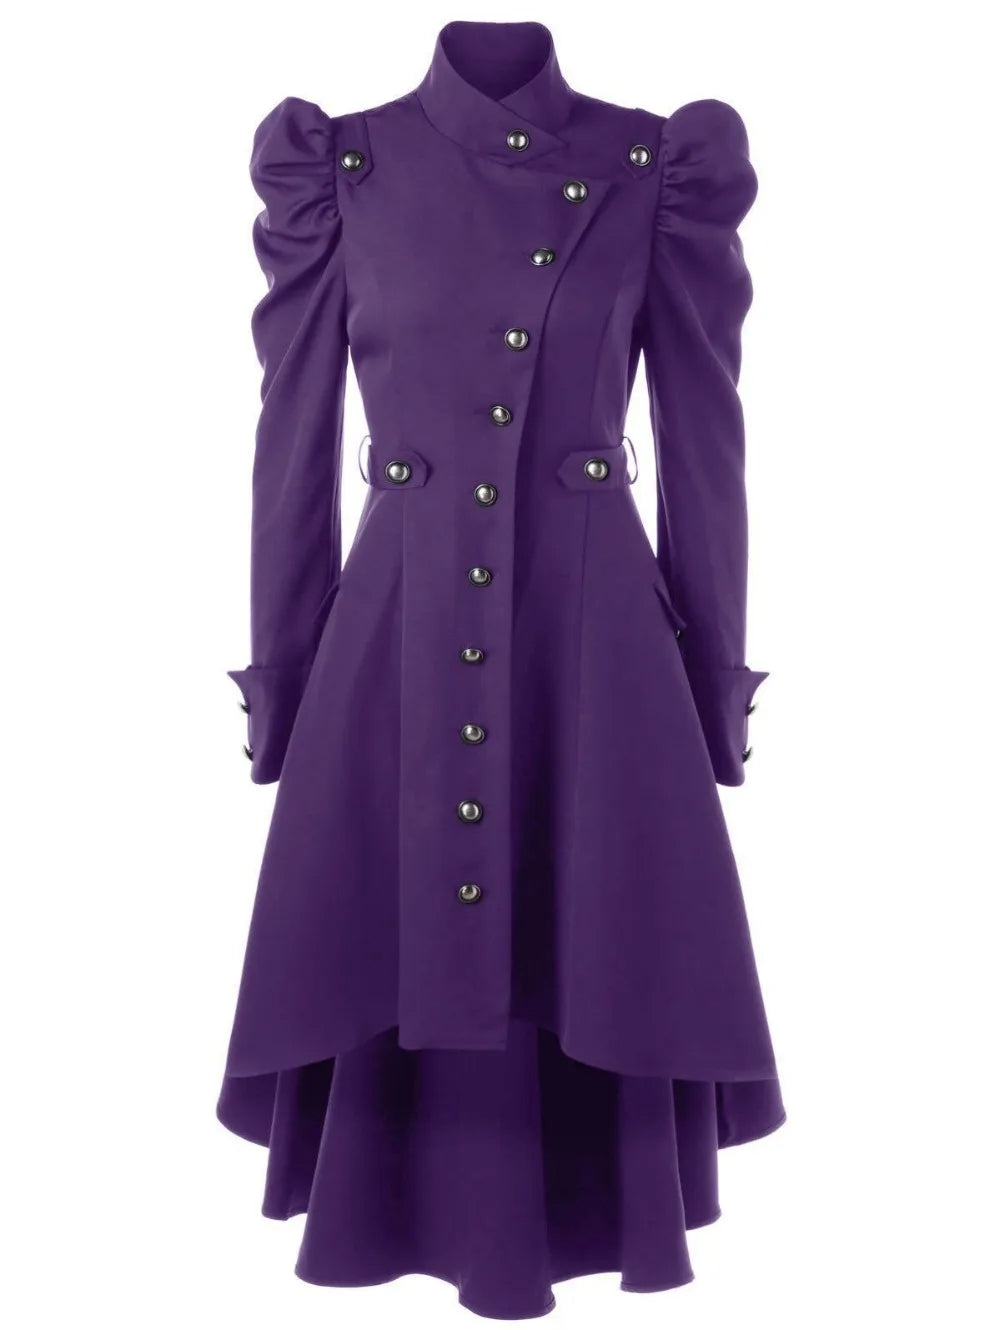 Manteau gothique femme long style médievale